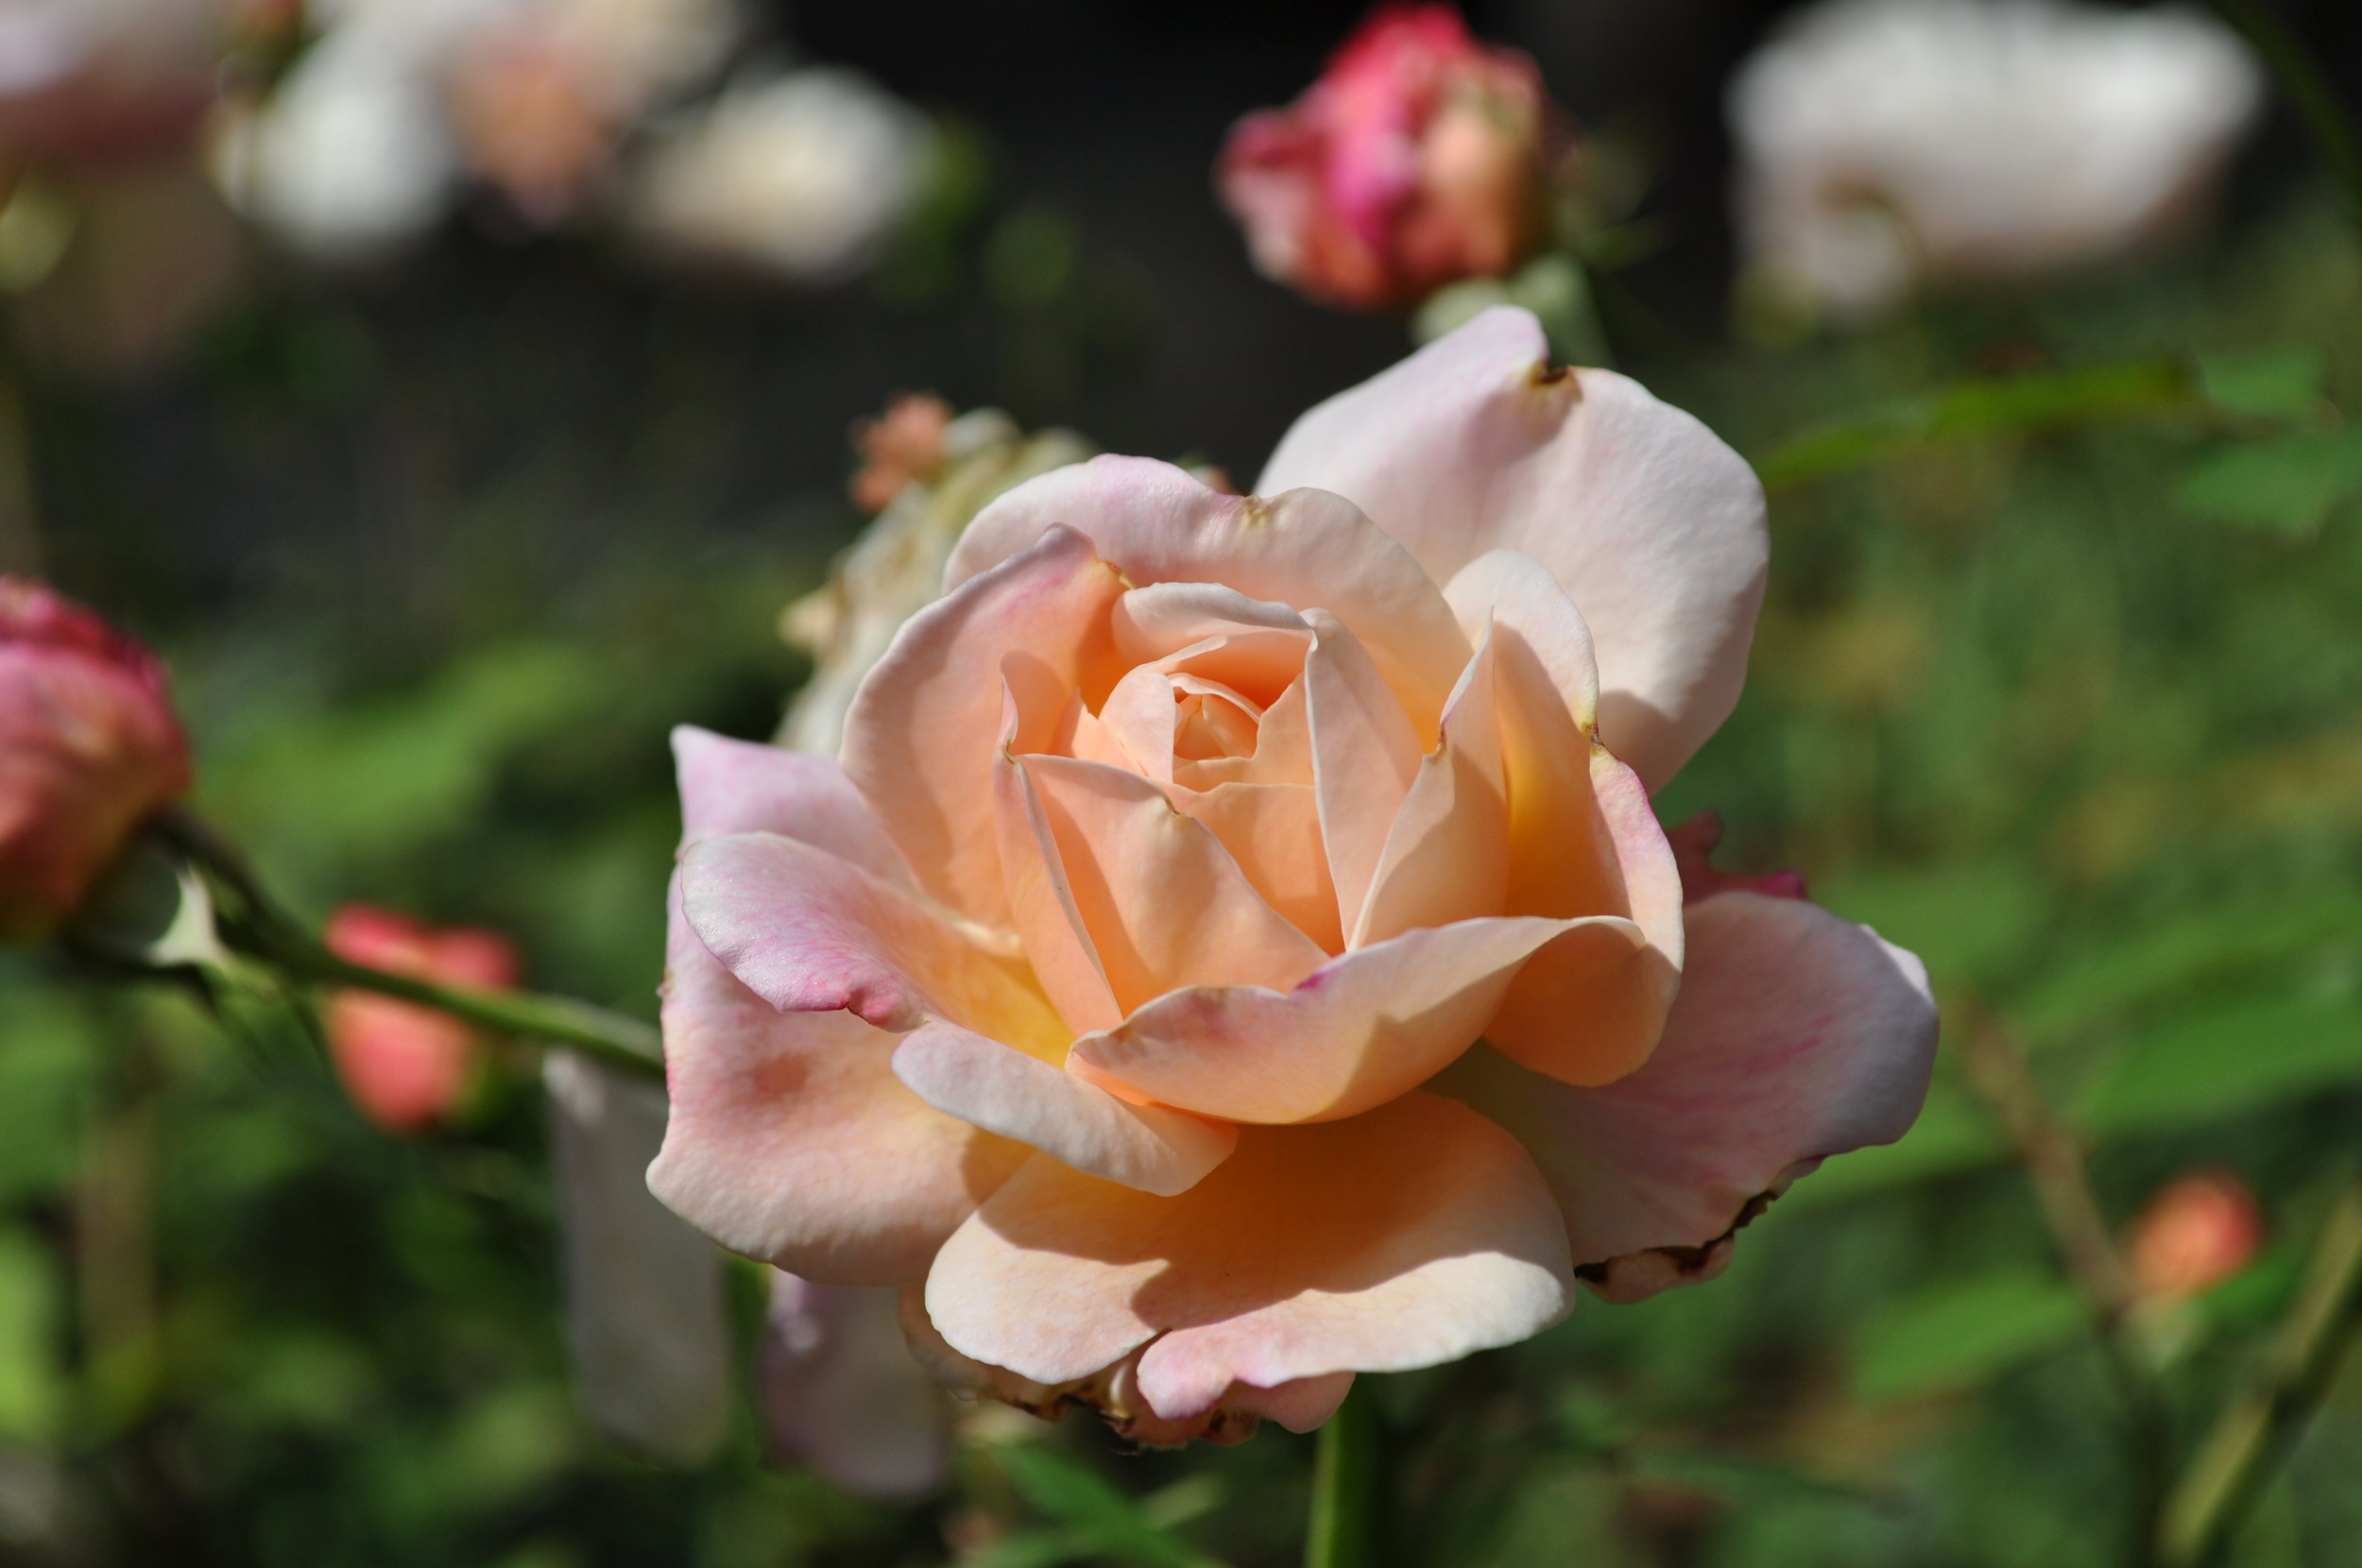 Marie Antoinette rose